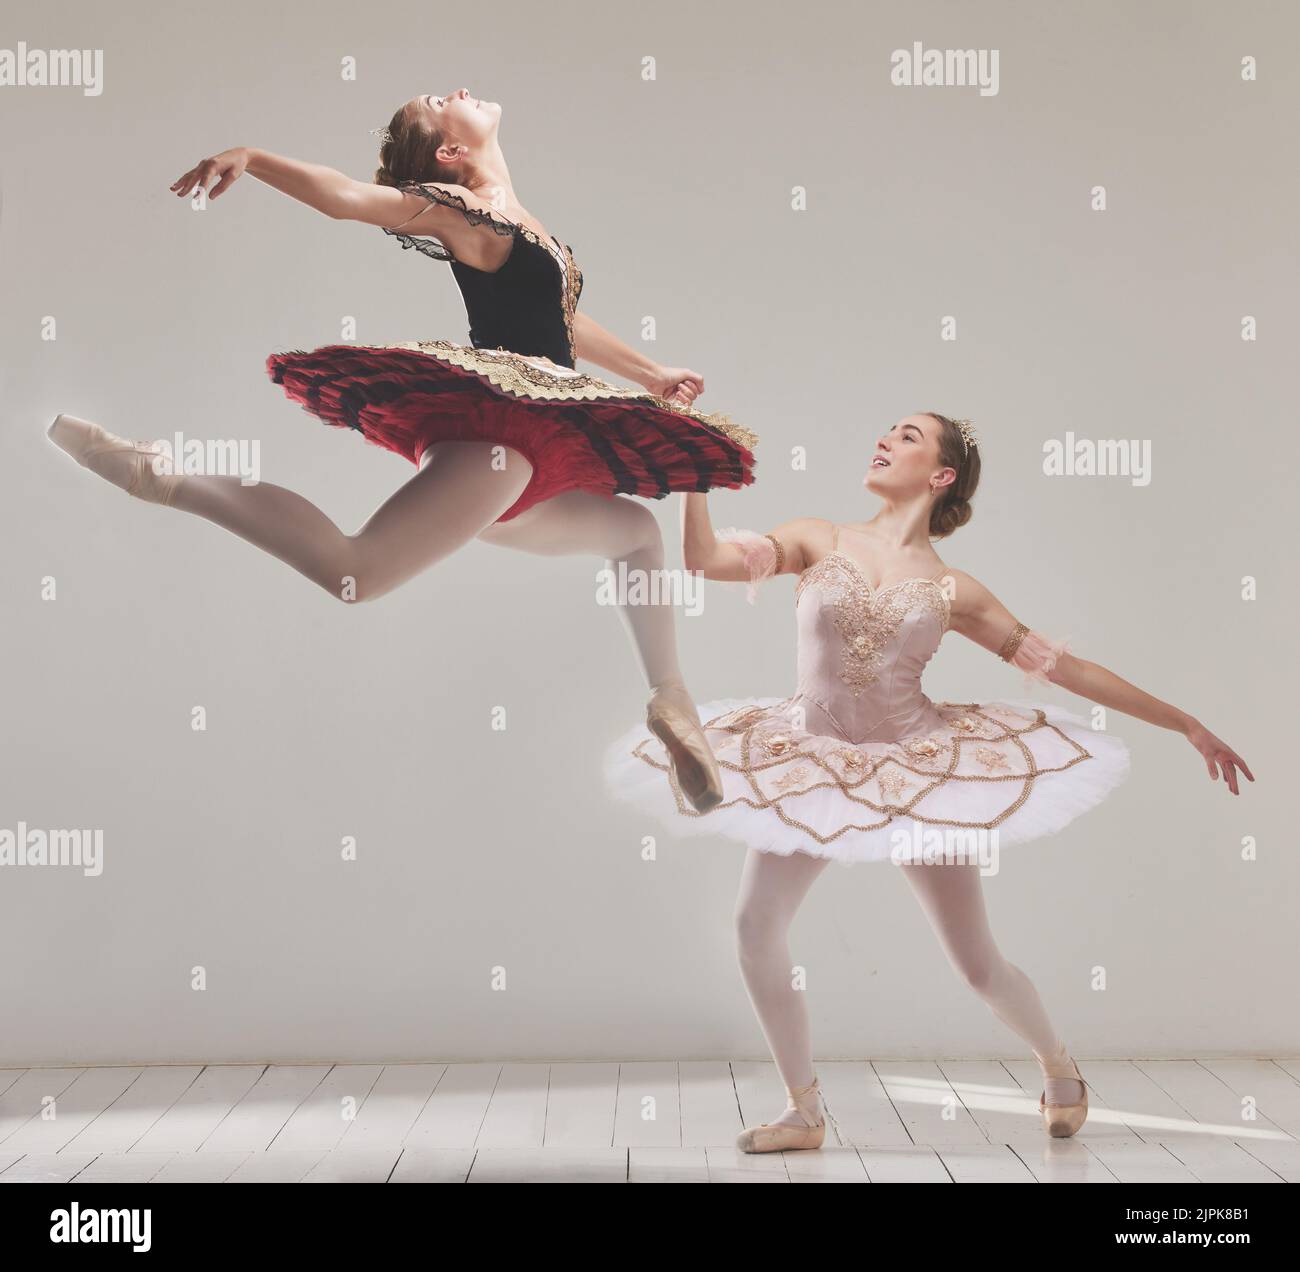 Ballerina, Balletttänzer und Performance-Künstler springen in der Luft mit Flexibilität, Bewegung und Balance in einem Studio. Energie, energetisch und klassisch Stockfoto